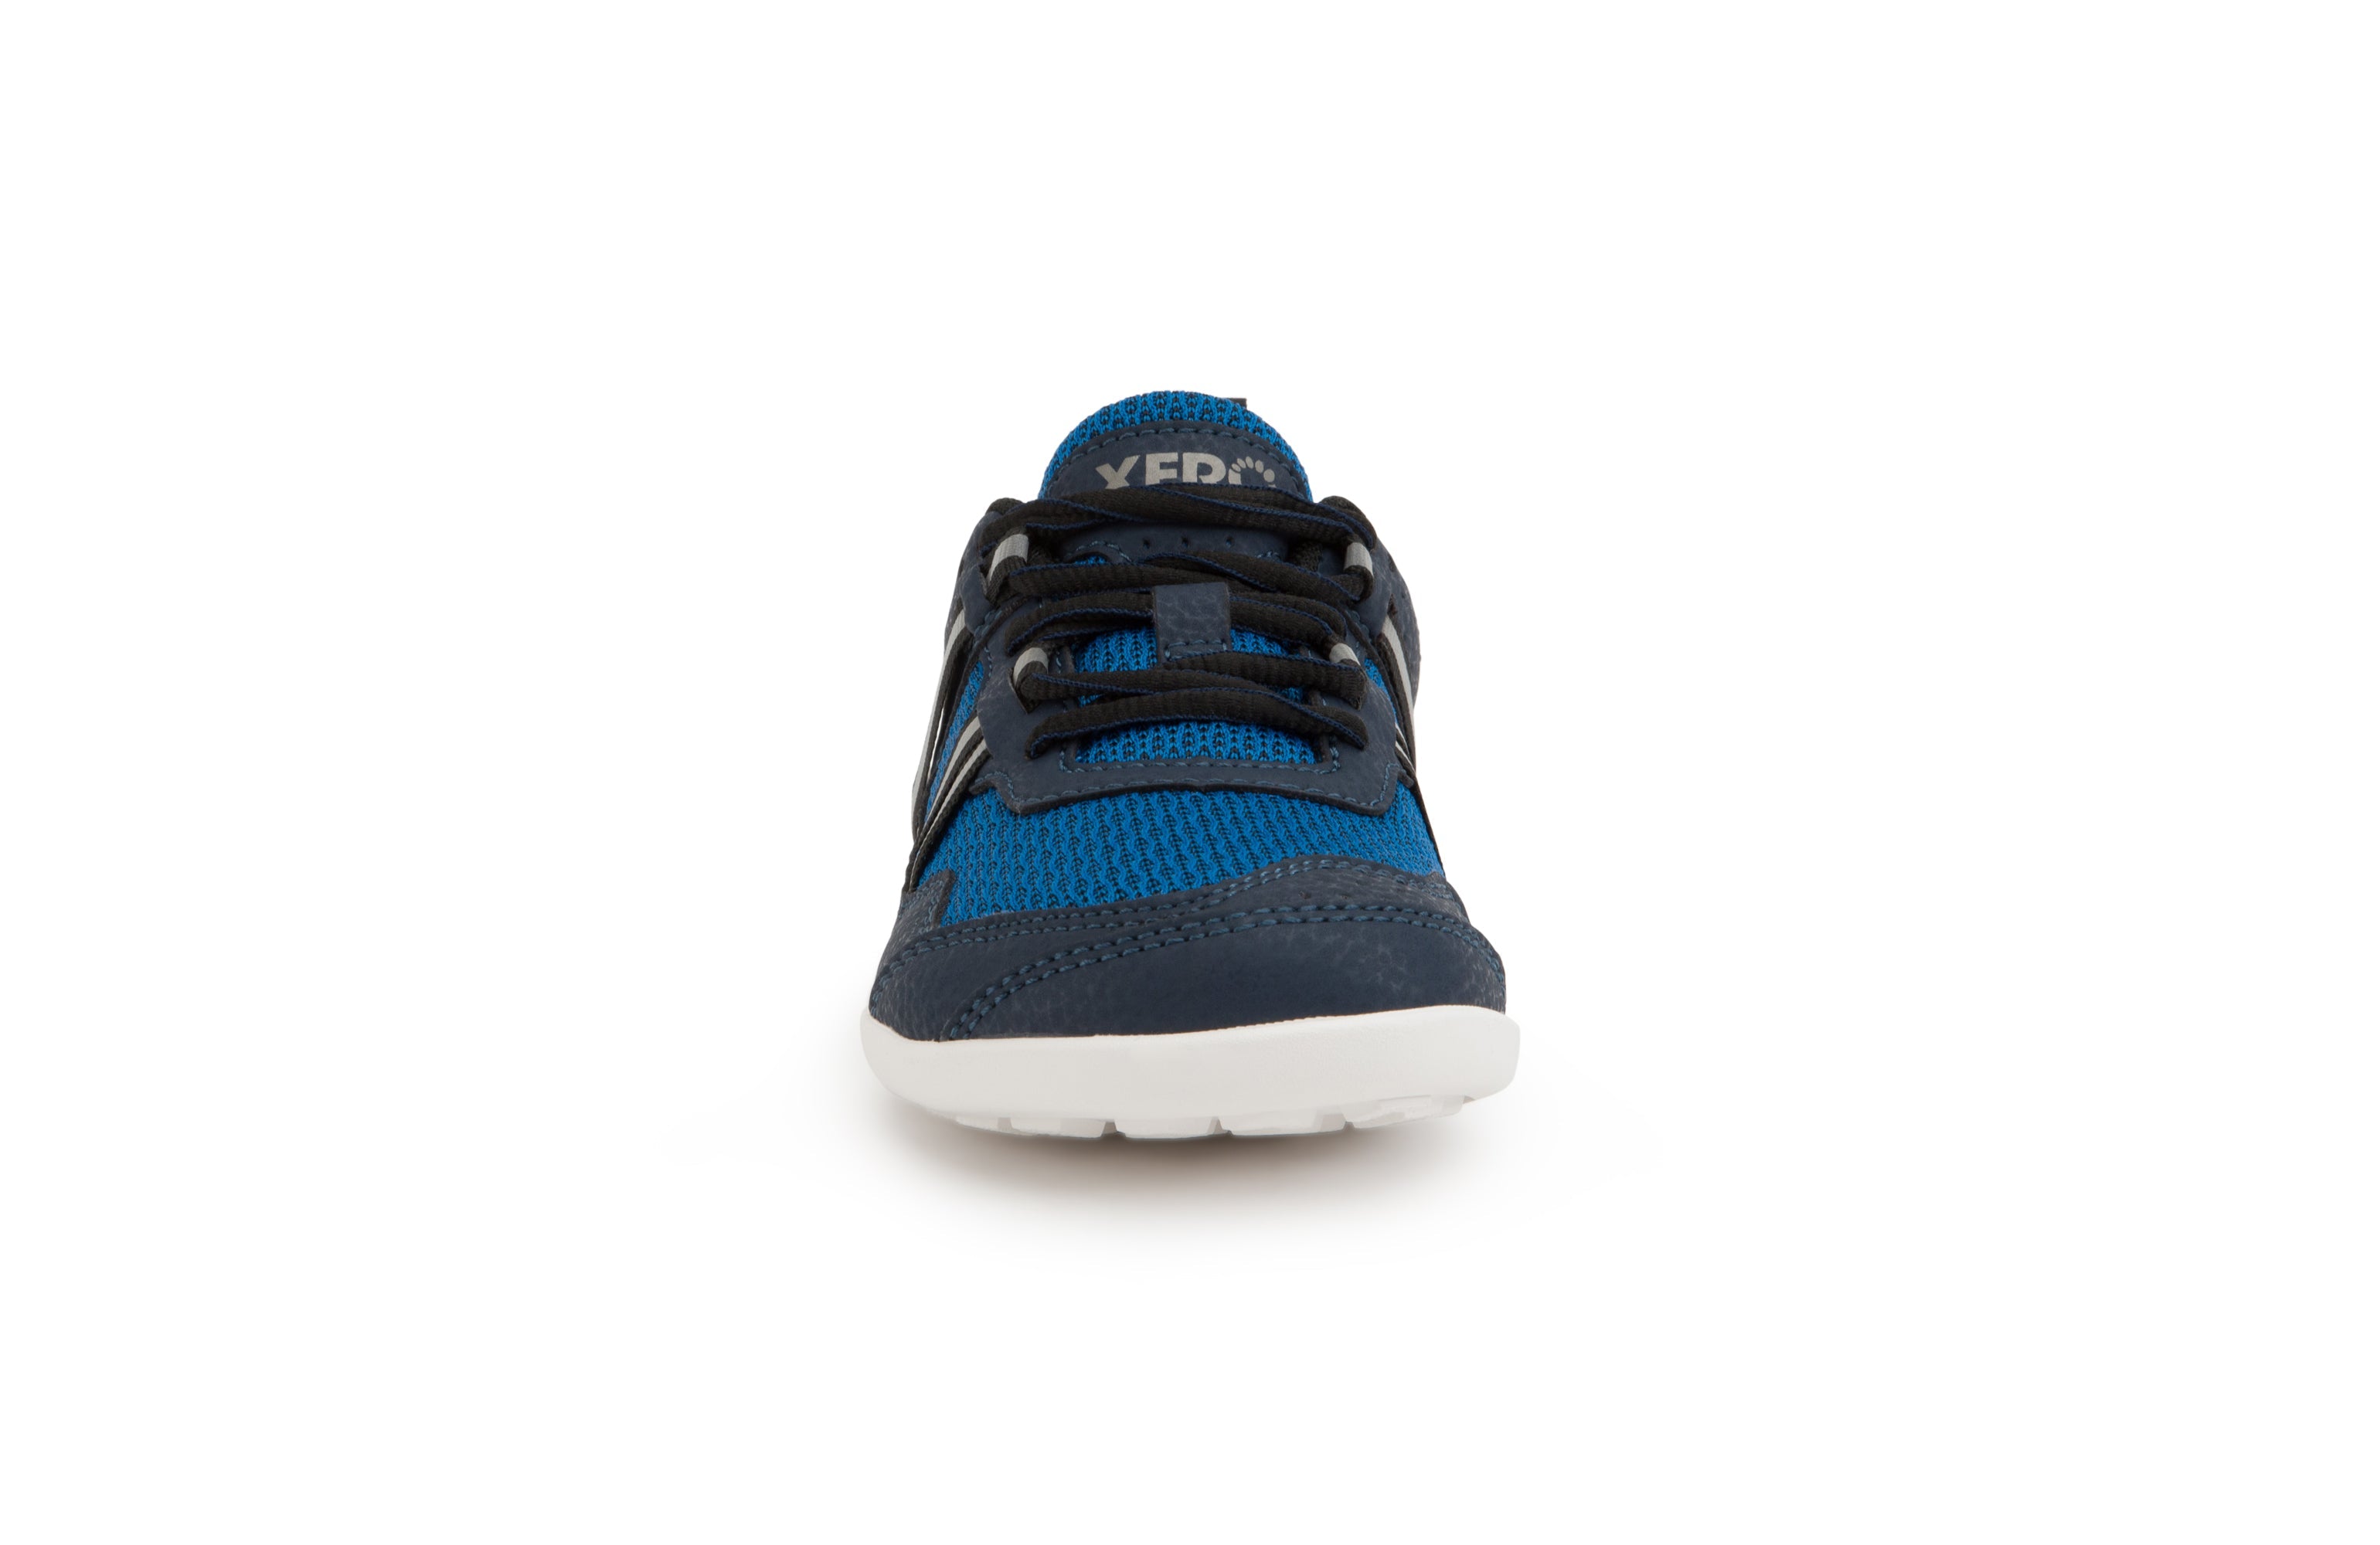 Xero Shoes Prio Kids barfods træningssko/sneakers til børn i farven mykonos blue, forfra